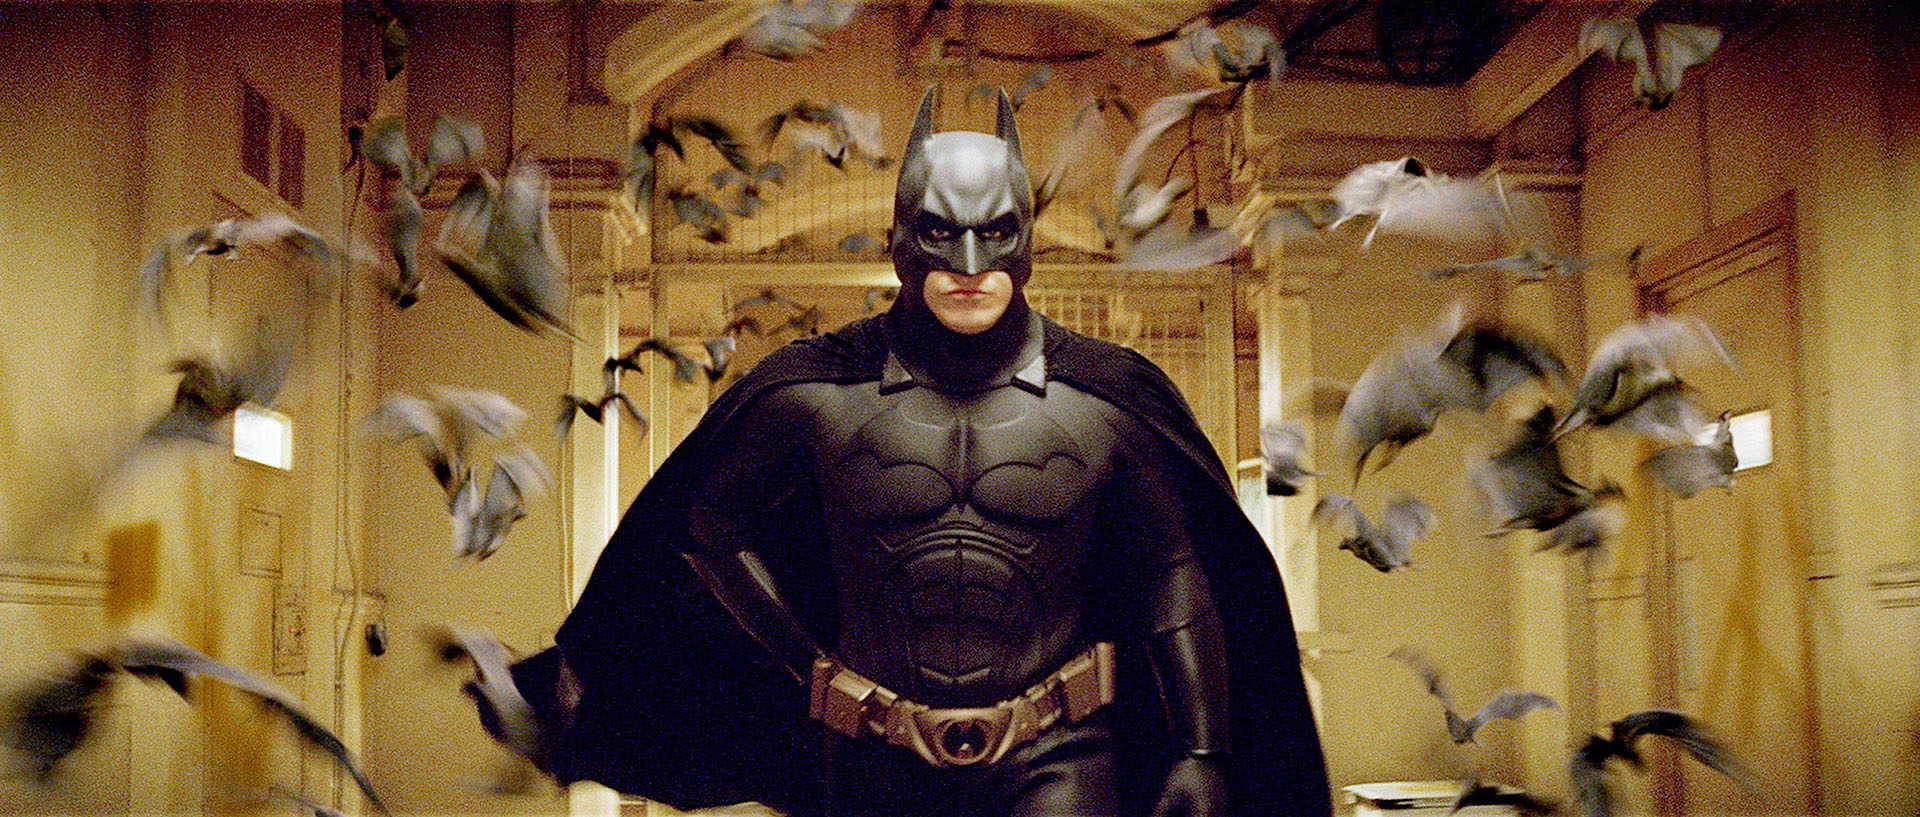 Christian Bale volvería a protagonizar una nueva “Batman” si Christopher Nolan la dirige